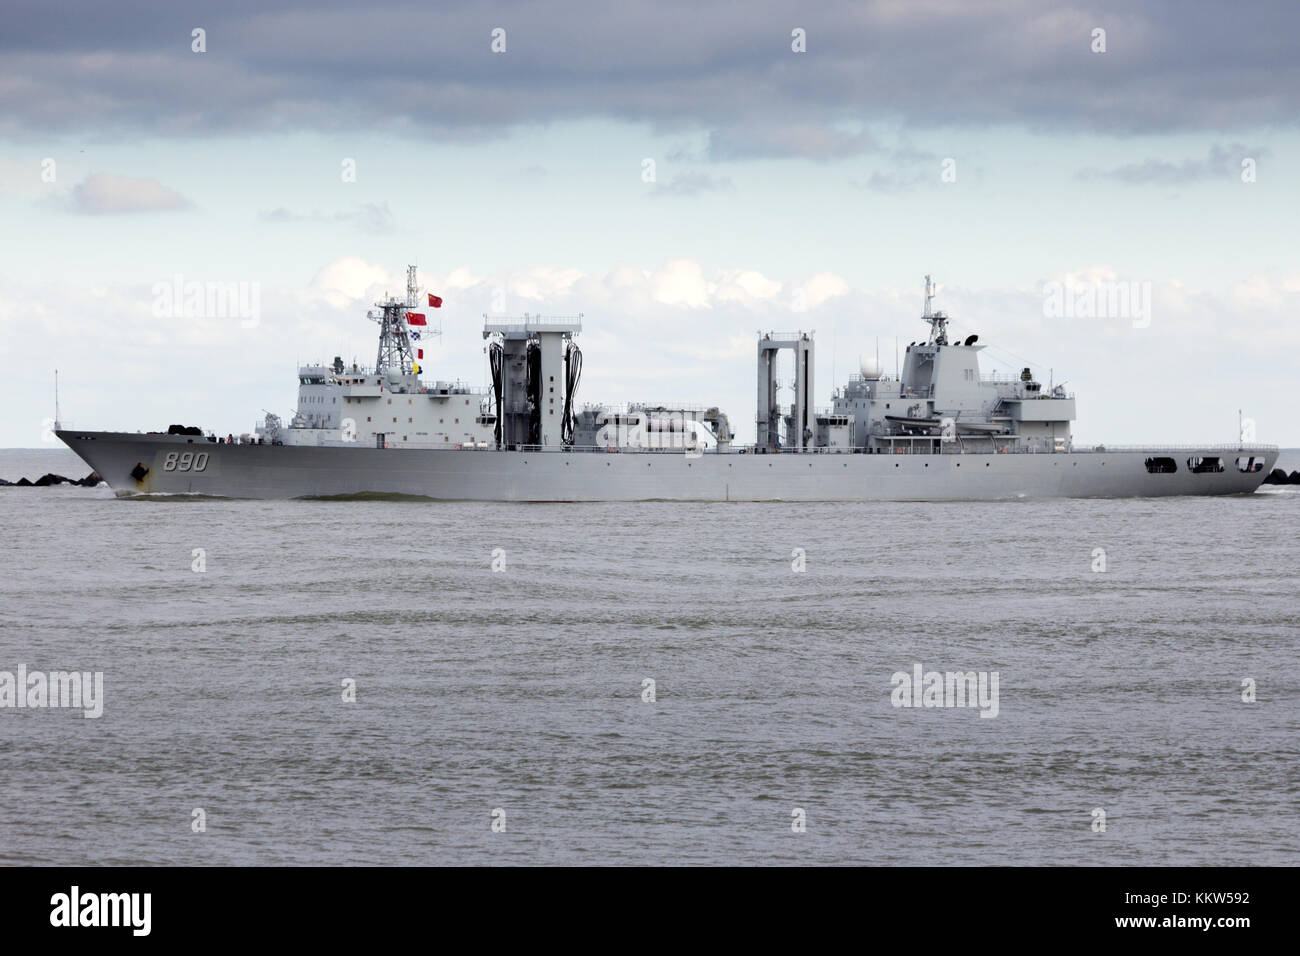 Rotterdam - jan 30, 2015 : type 903 de la marine chinoise ravitailleur (890) quitter le port de Rotterdam après la première visite jamais de la marine chinoise Banque D'Images